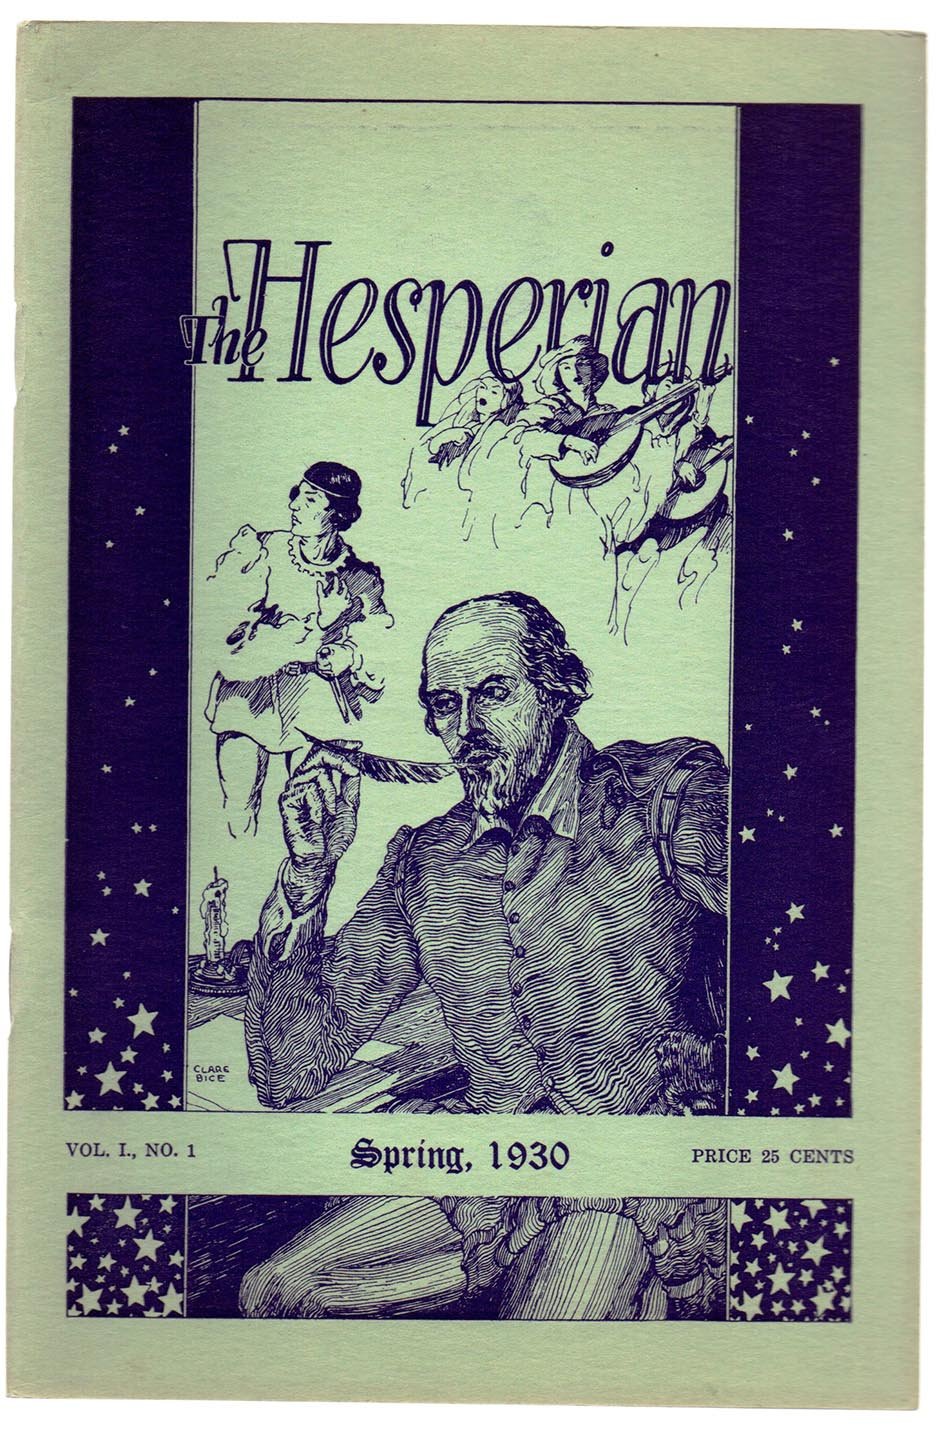 The Hesperian, Spring, 1930